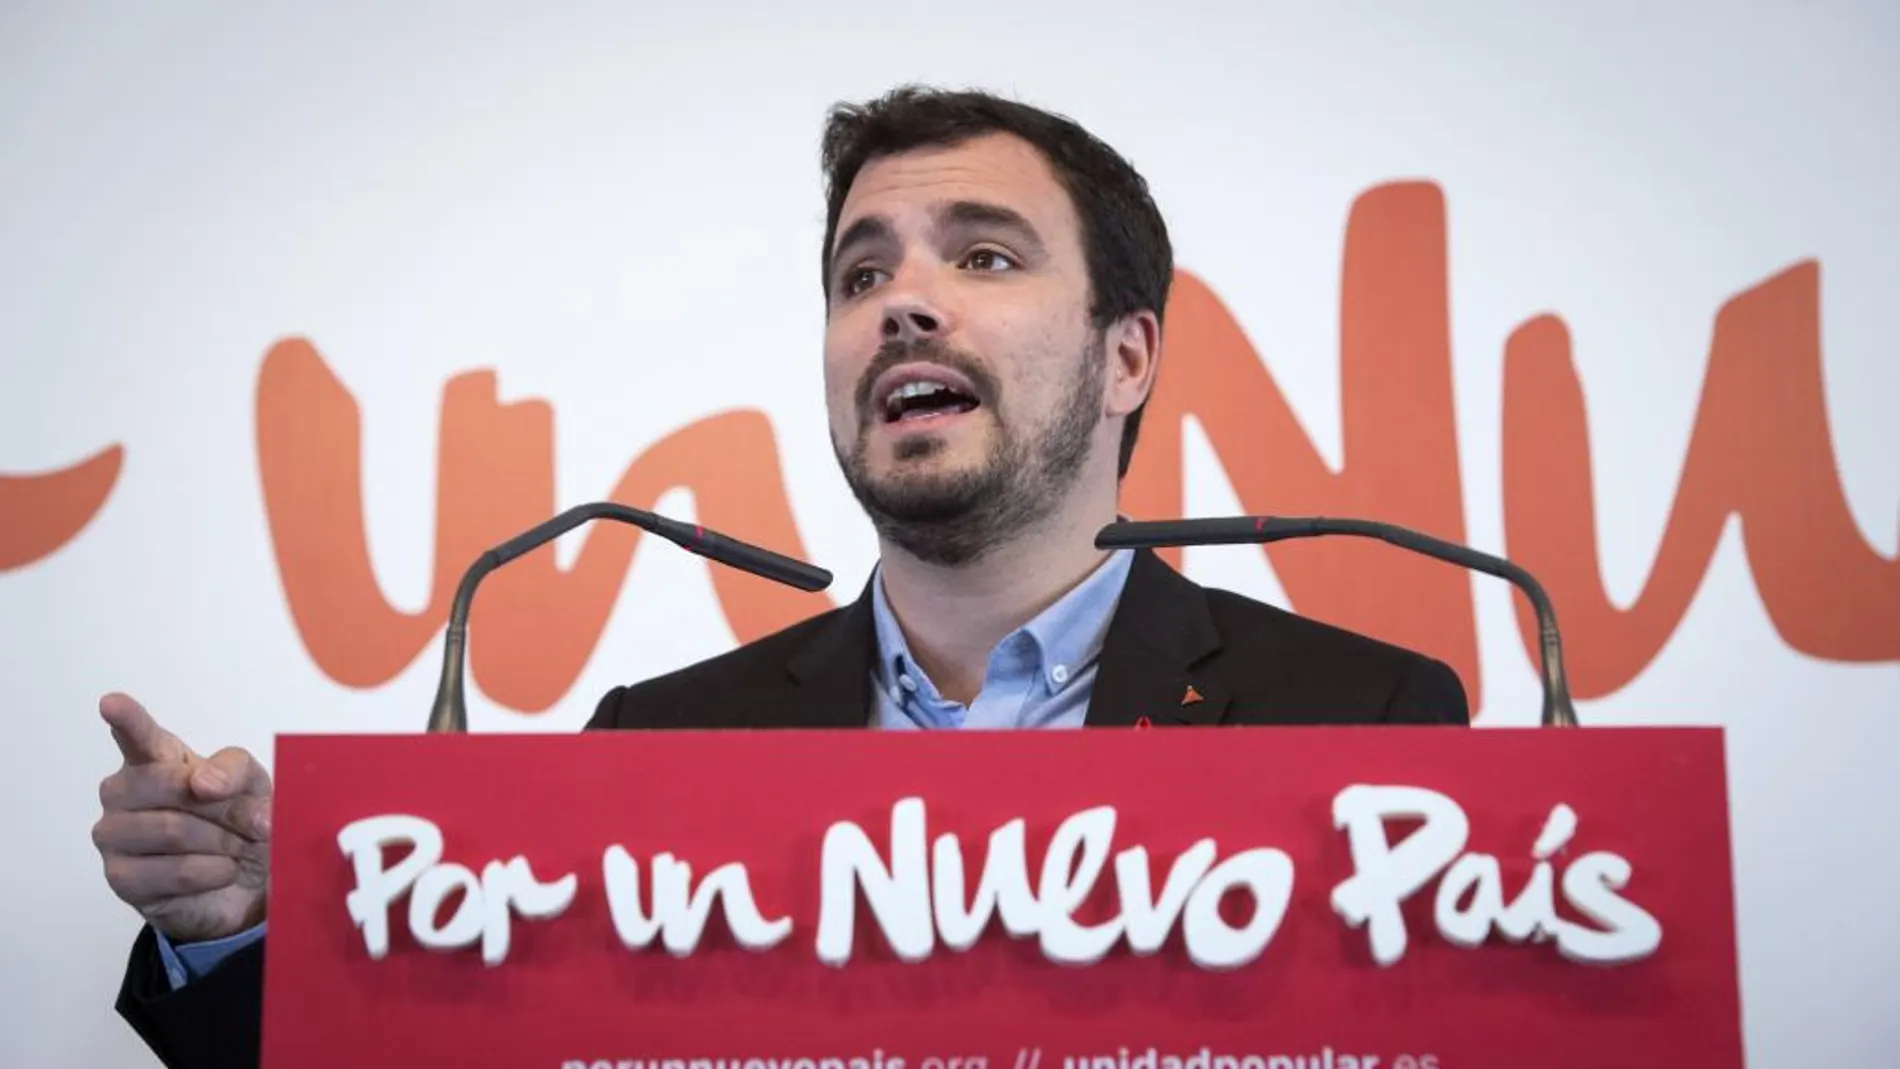 El candidato de IU a la Presidencia del Gobierno, Alberto Garzón, durante su intervención hoy en la presentación del lema y la imagen de su campaña electoral